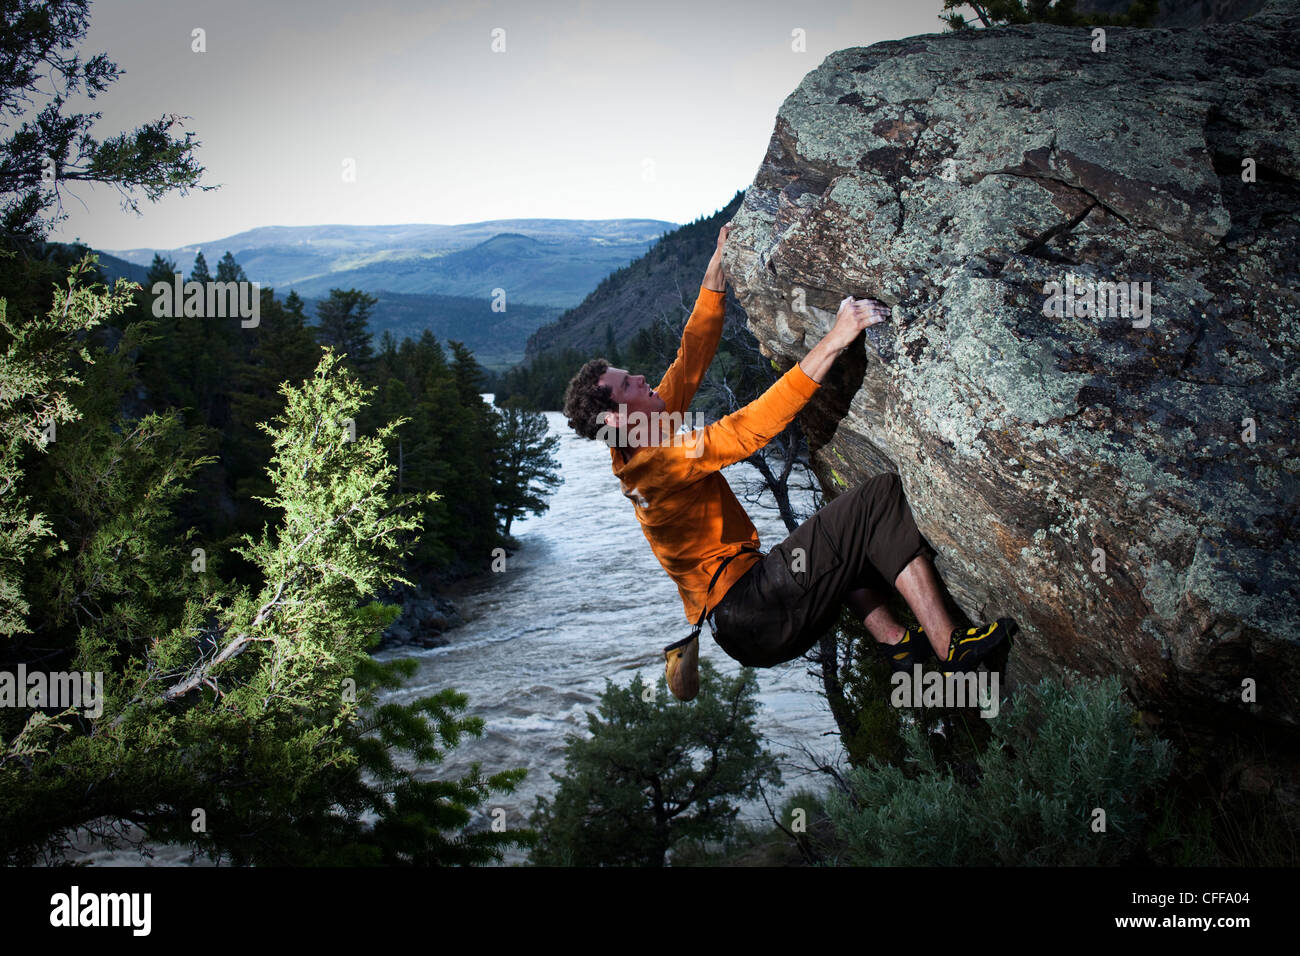 Un homme athlétique bouldering au-dessus d'une rivière dans le Montana. Banque D'Images